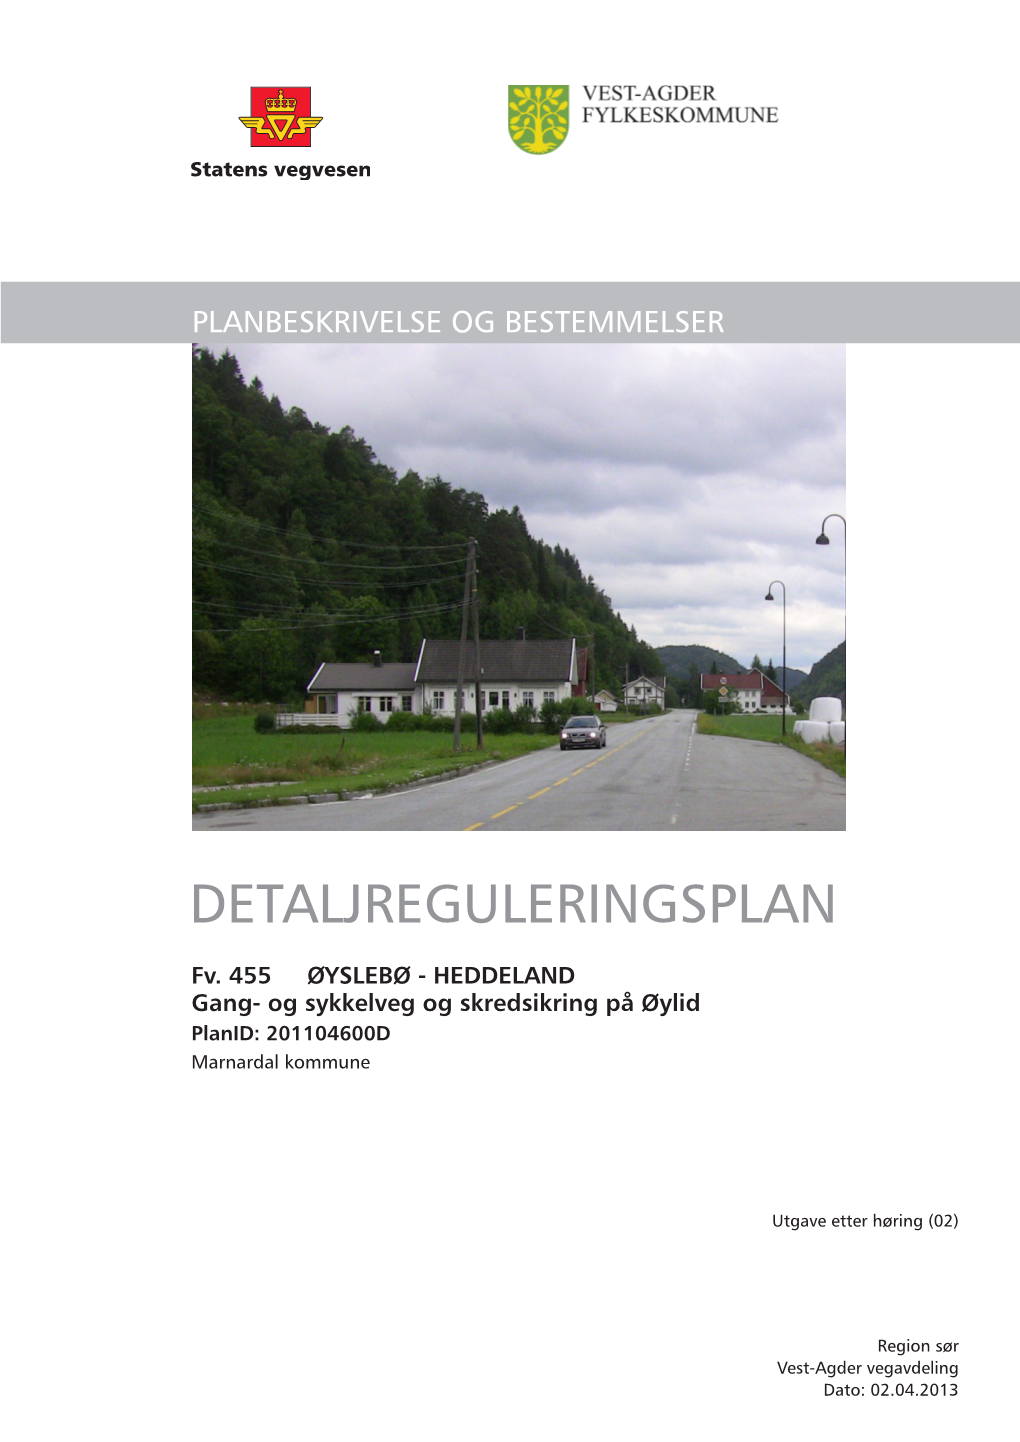 Fv. 455 ØYSLEBØ – HEDDELAND Reguleringsplan - Planbeskrivelse 2